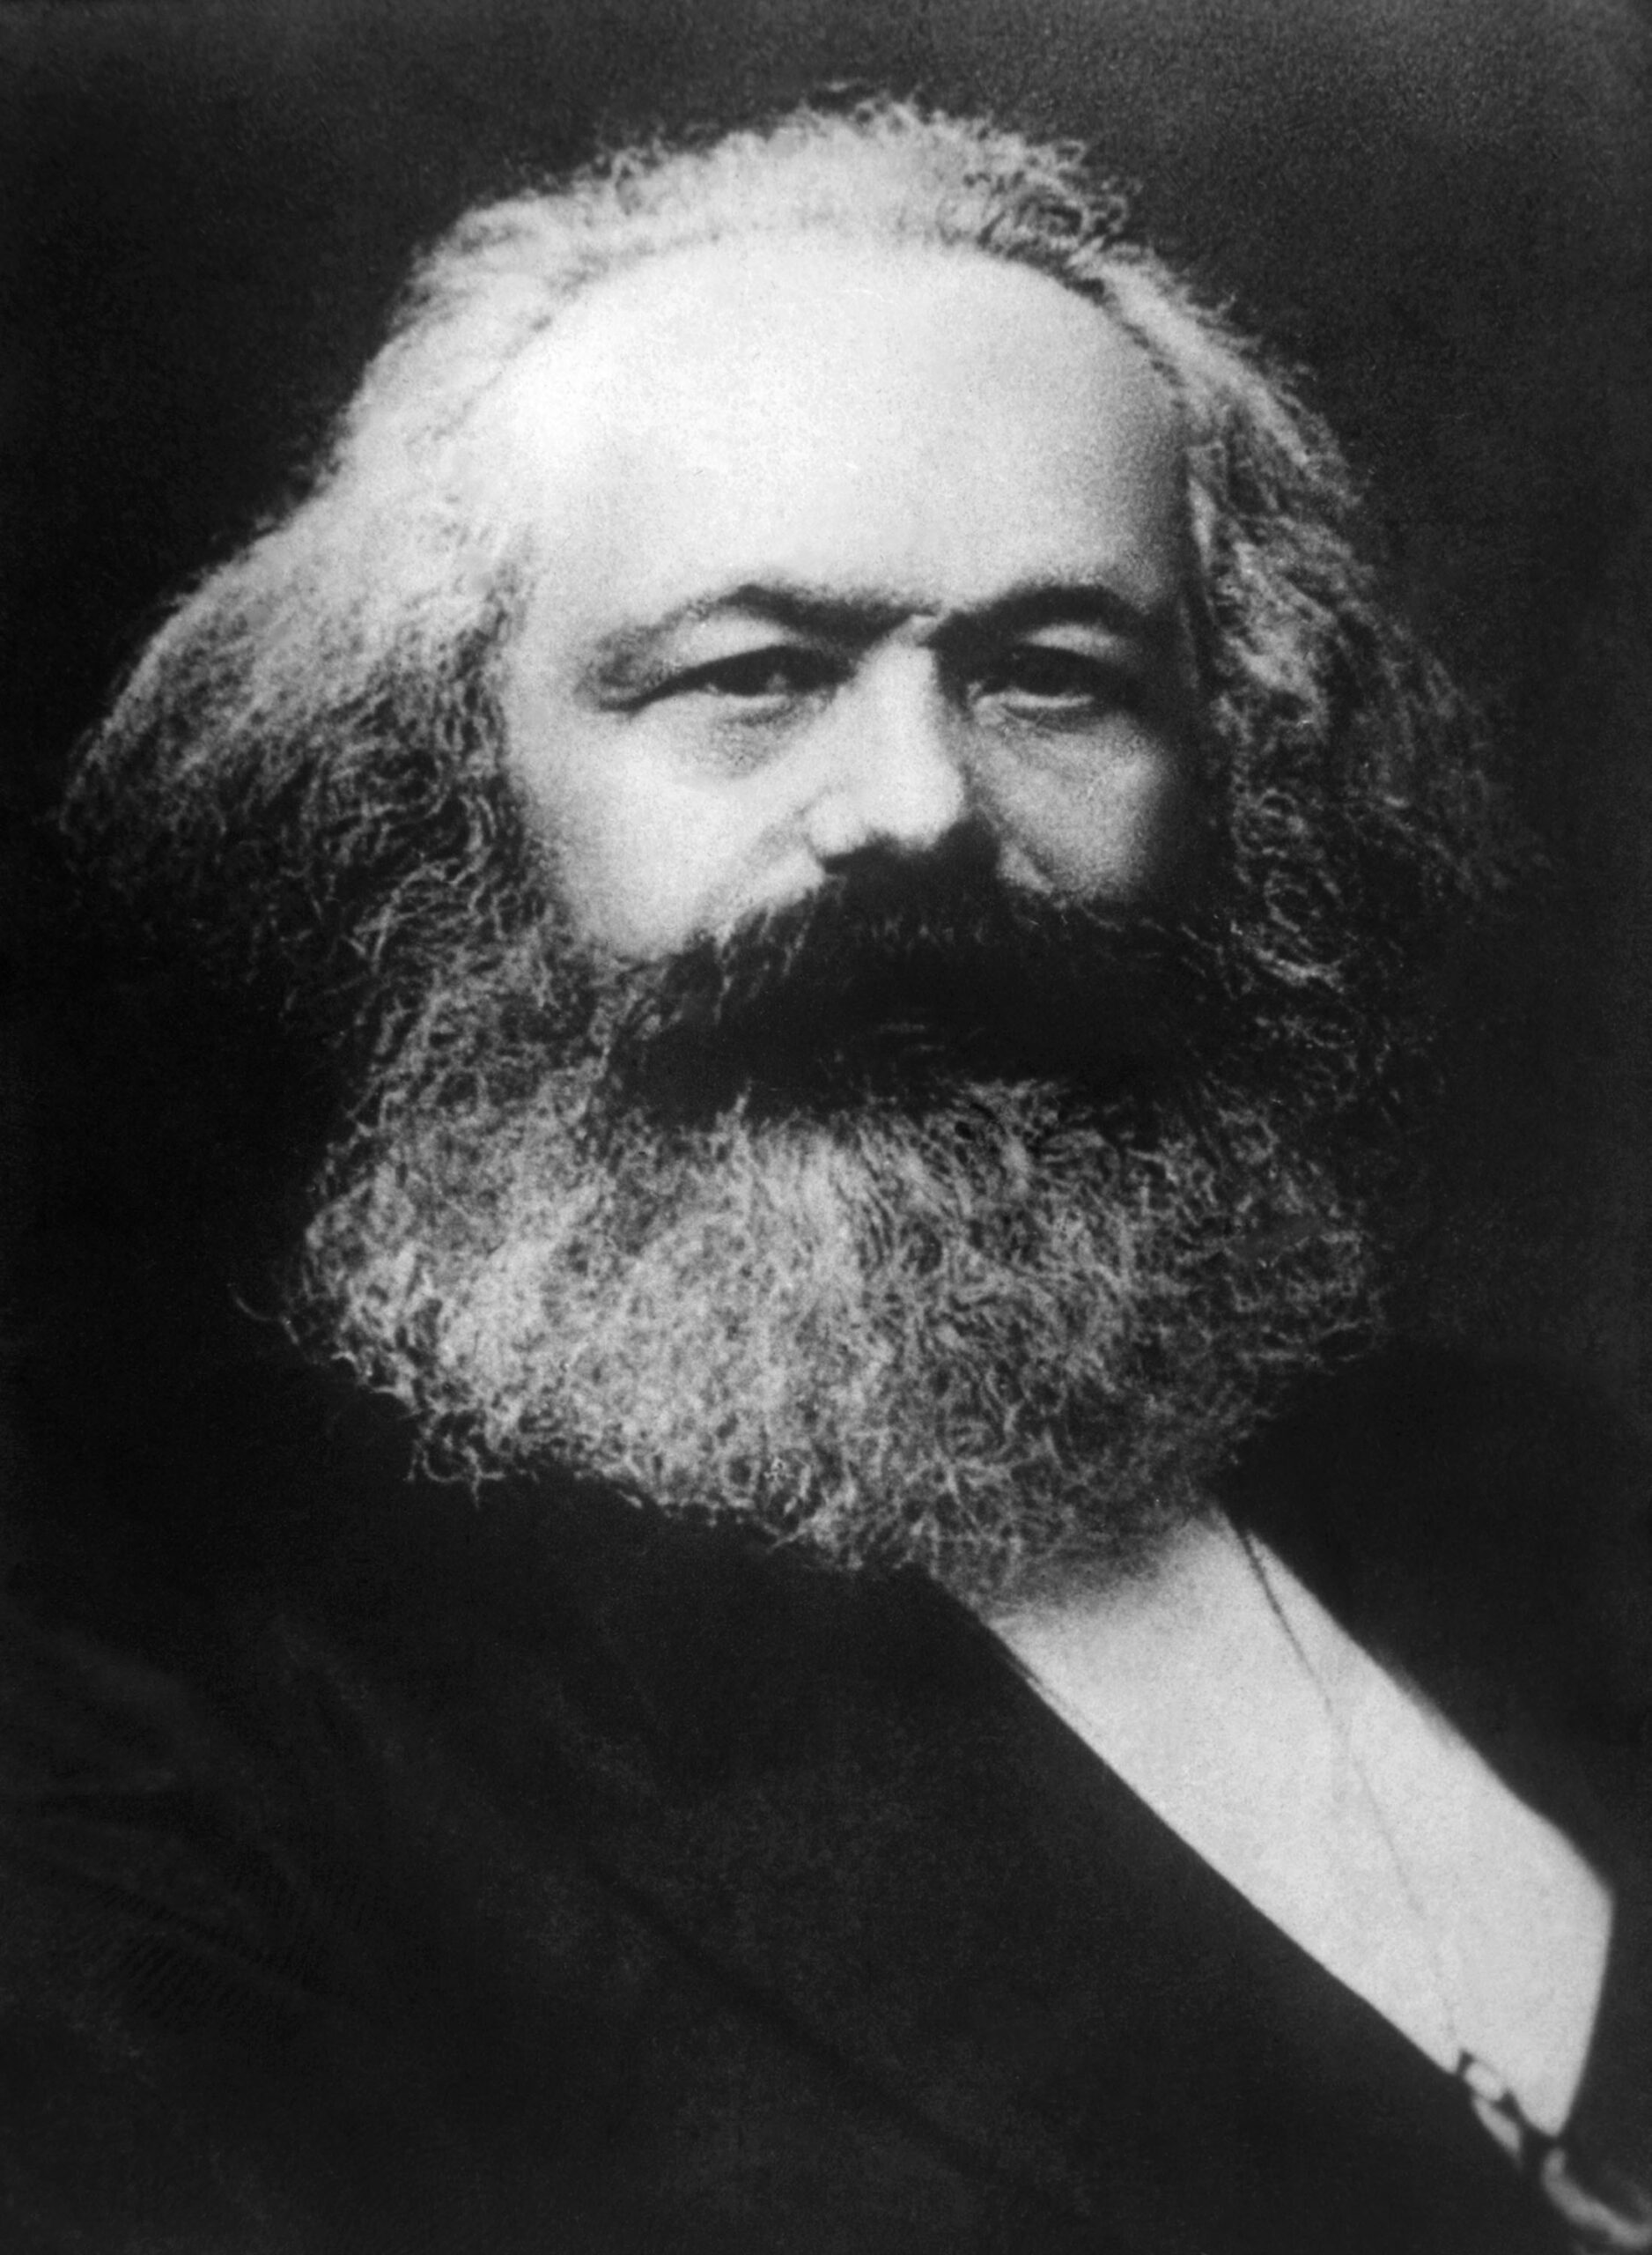 Eine Fotografie von Karl Marx